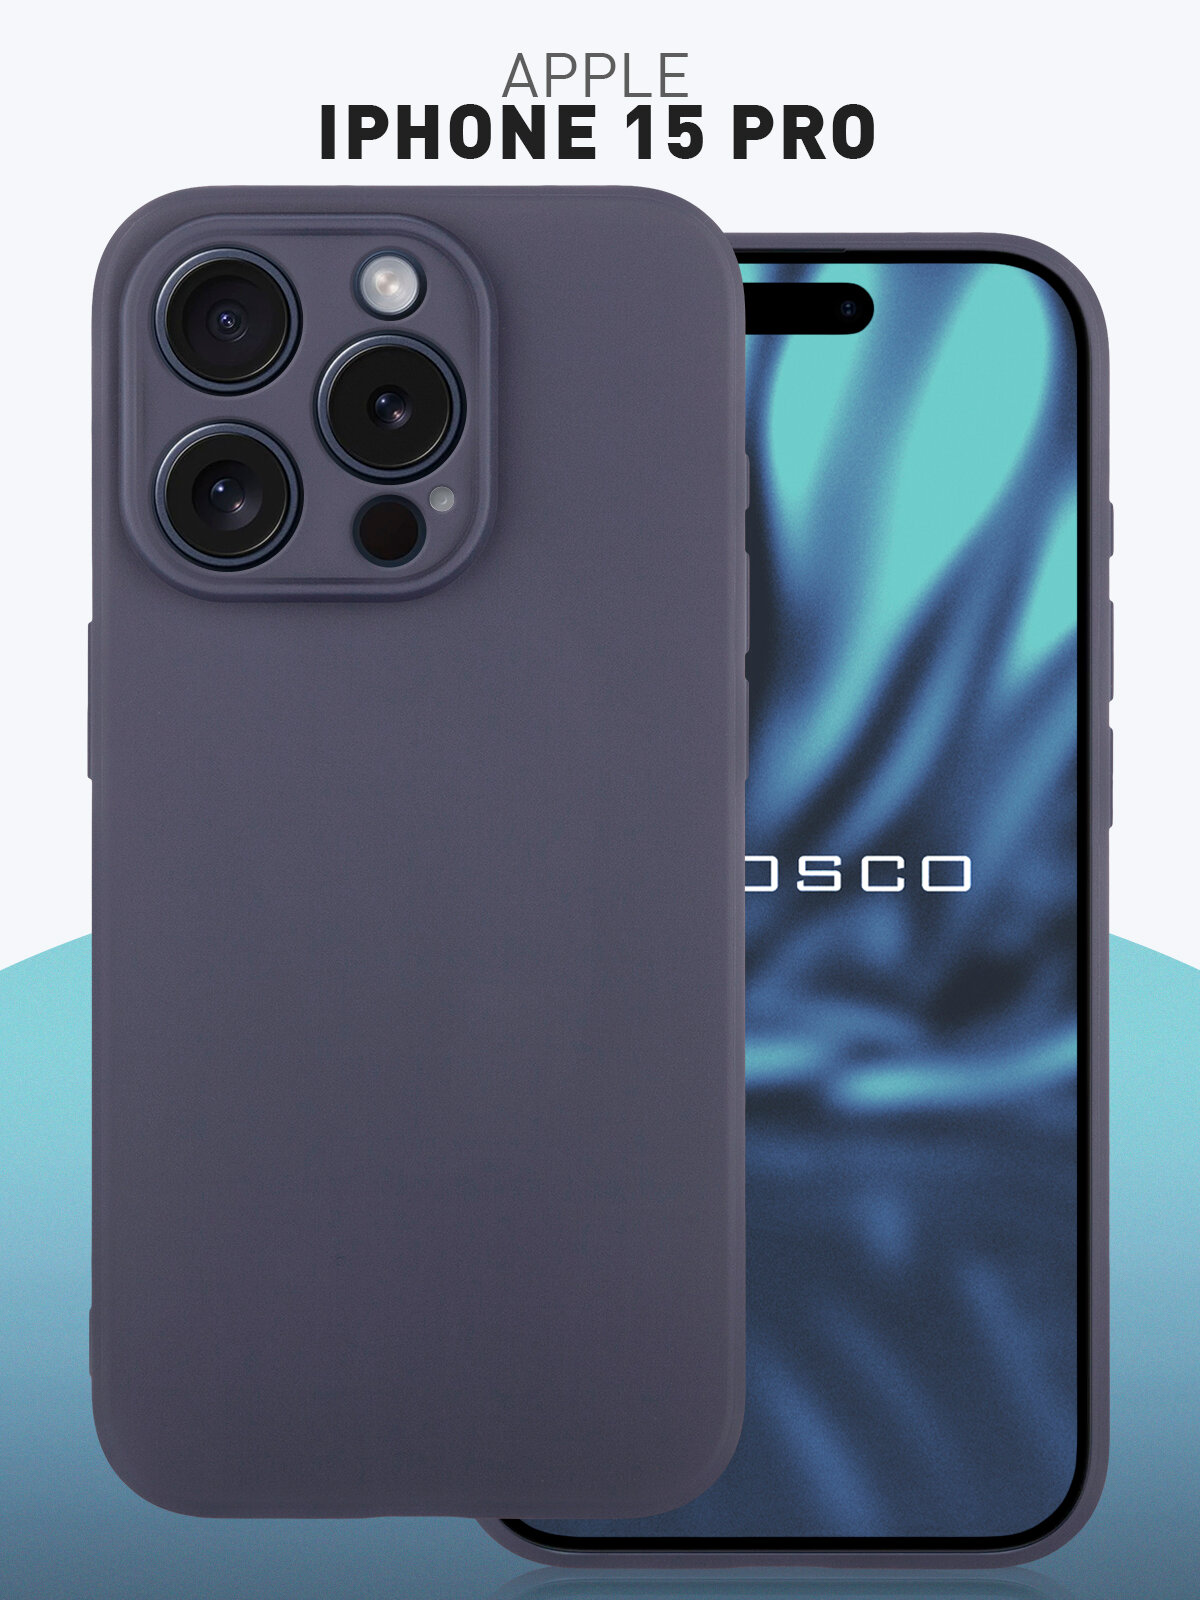 Чехол ROSCO для Apple iPhone 15 Pro (Эпл Айфон 15 Про), силиконовый чехол, тонкий, матовое покрытие, защита модуля камер, тёмно-синий